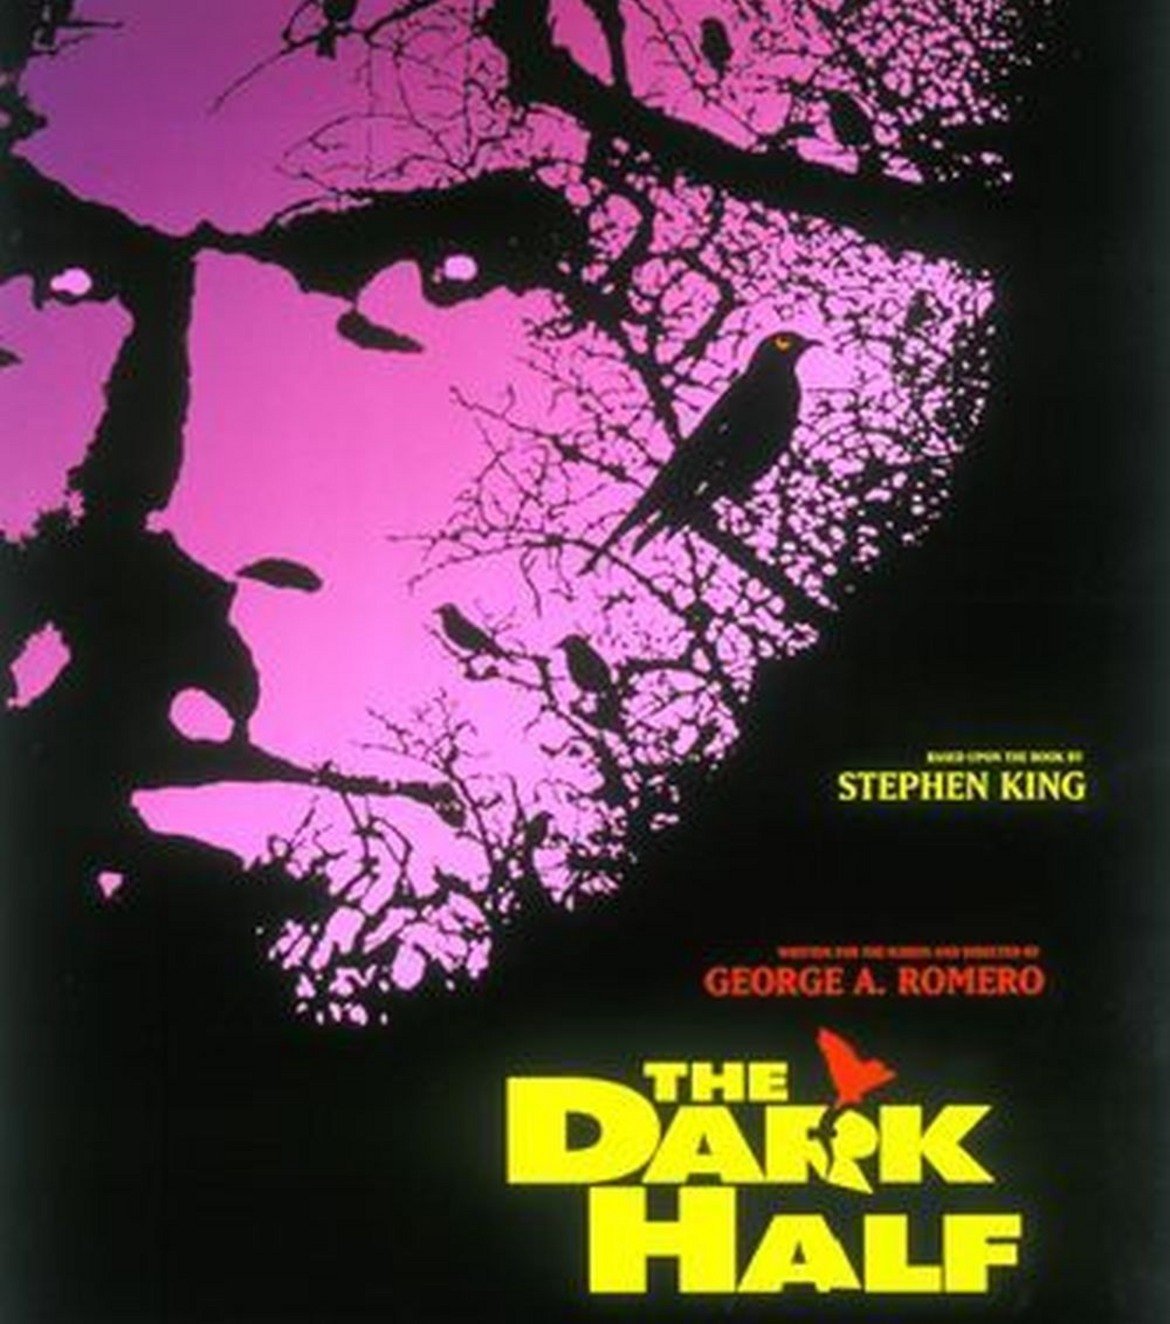 The Dark Half / Тъмната половина (1993 г.)

Този филм е адаптация на едноименния роман на Стивън Кинг, като освен режисьор, Ромеро тук е и сценарист. "Тъмната половина" разказва за писателя на трилъри Тад Бюмонт, по-известен със своя творчески псевдоним - Джордж Старк. Когато решава да се откаже от това име, Бюмонт символично погребва "Старк". Псевдонимът му обаче придобива физическа форма и започва да тормози семейството и приятелите на писателя. Понякога и с фатални последствия.